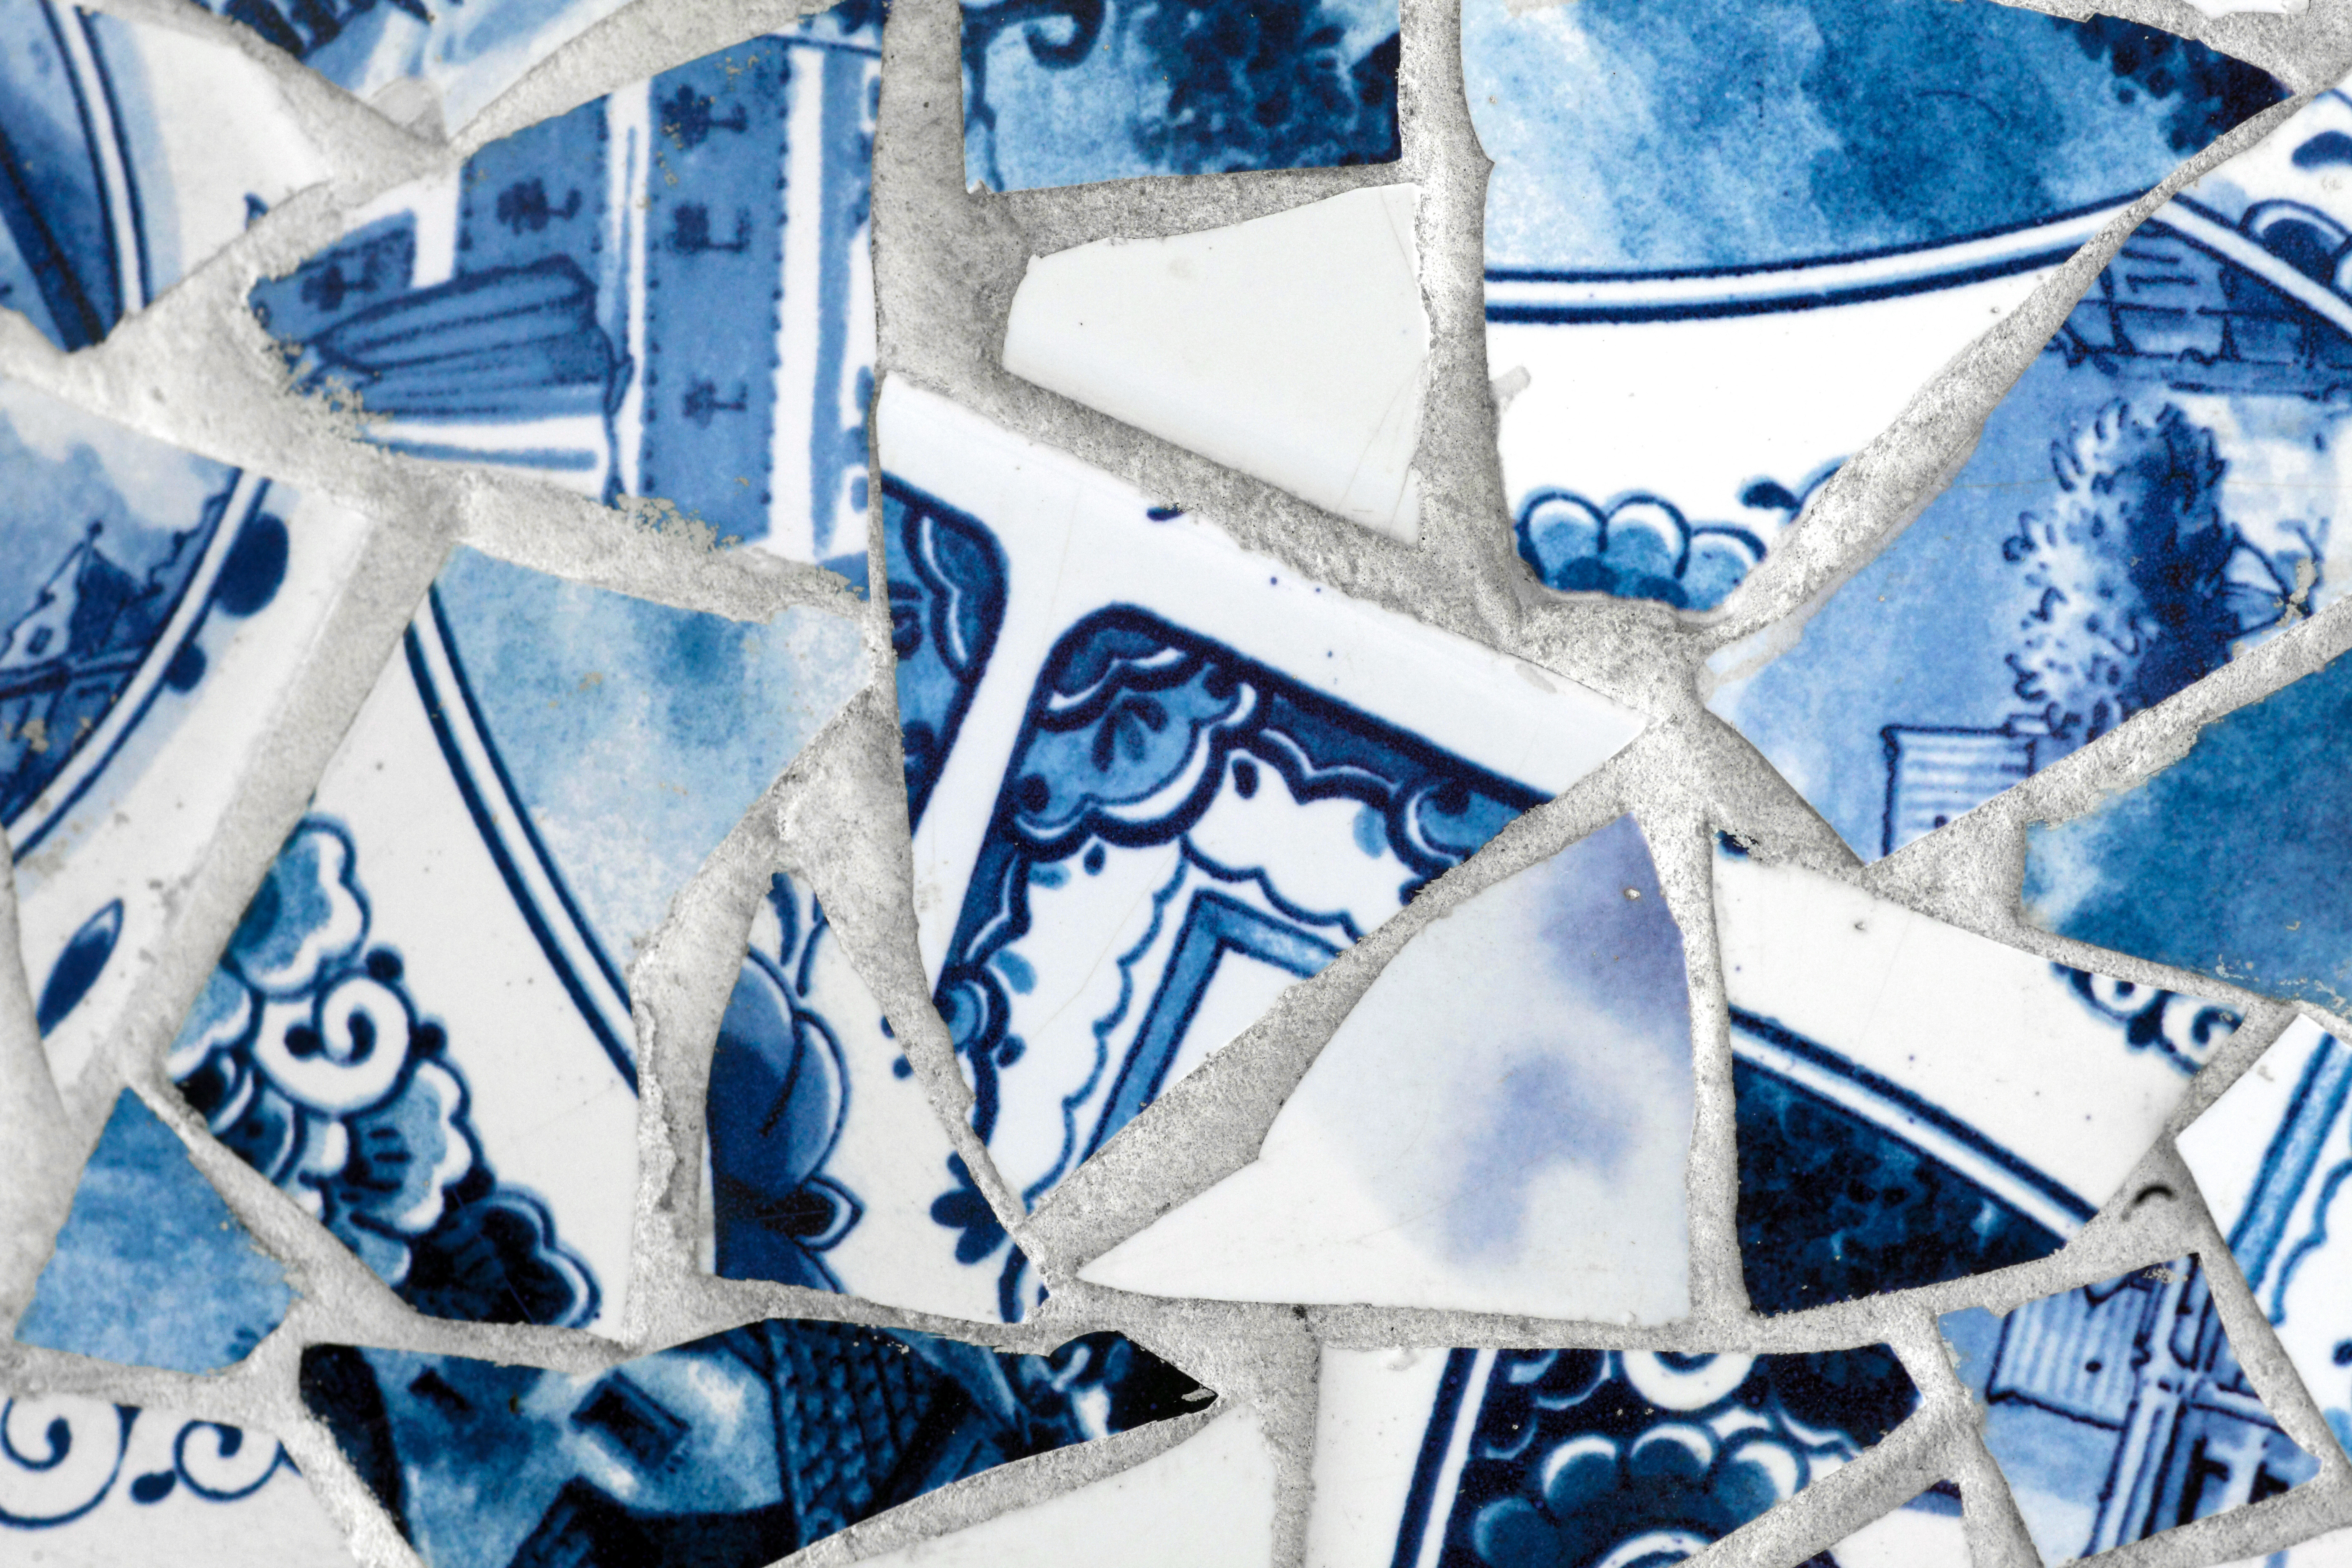 La fuente tiene forma de fragmentos de jarrones y azulejos de porcelana de Royal Blue Delft.